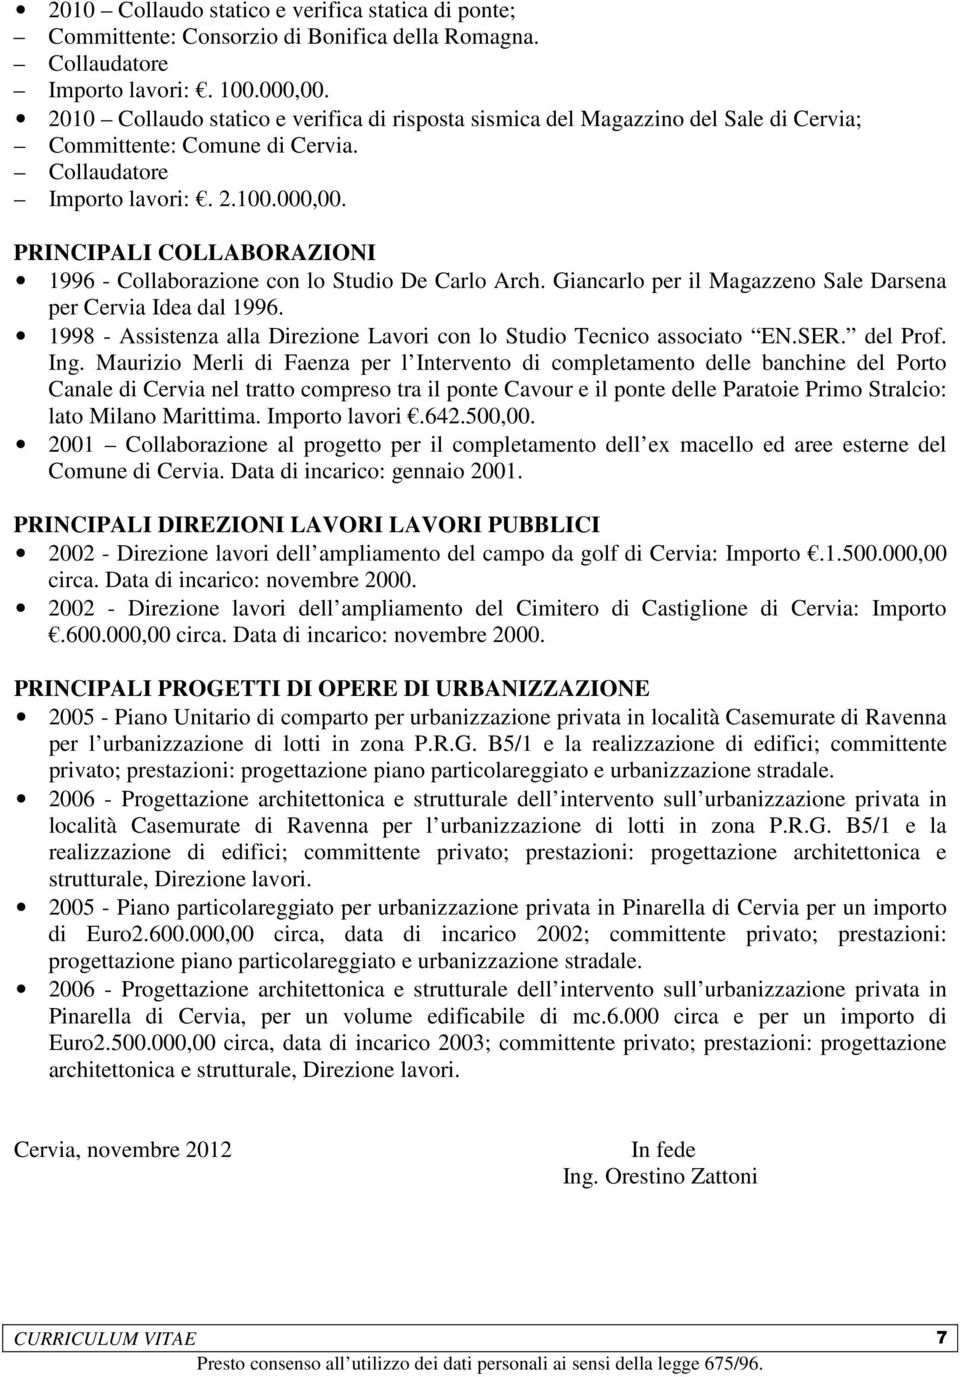 PRINCIPALI COLLABORAZIONI 1996 - Collaborazione con lo Studio De Carlo Arch. Giancarlo per il Magazzeno Sale Darsena per Cervia Idea dal 1996.